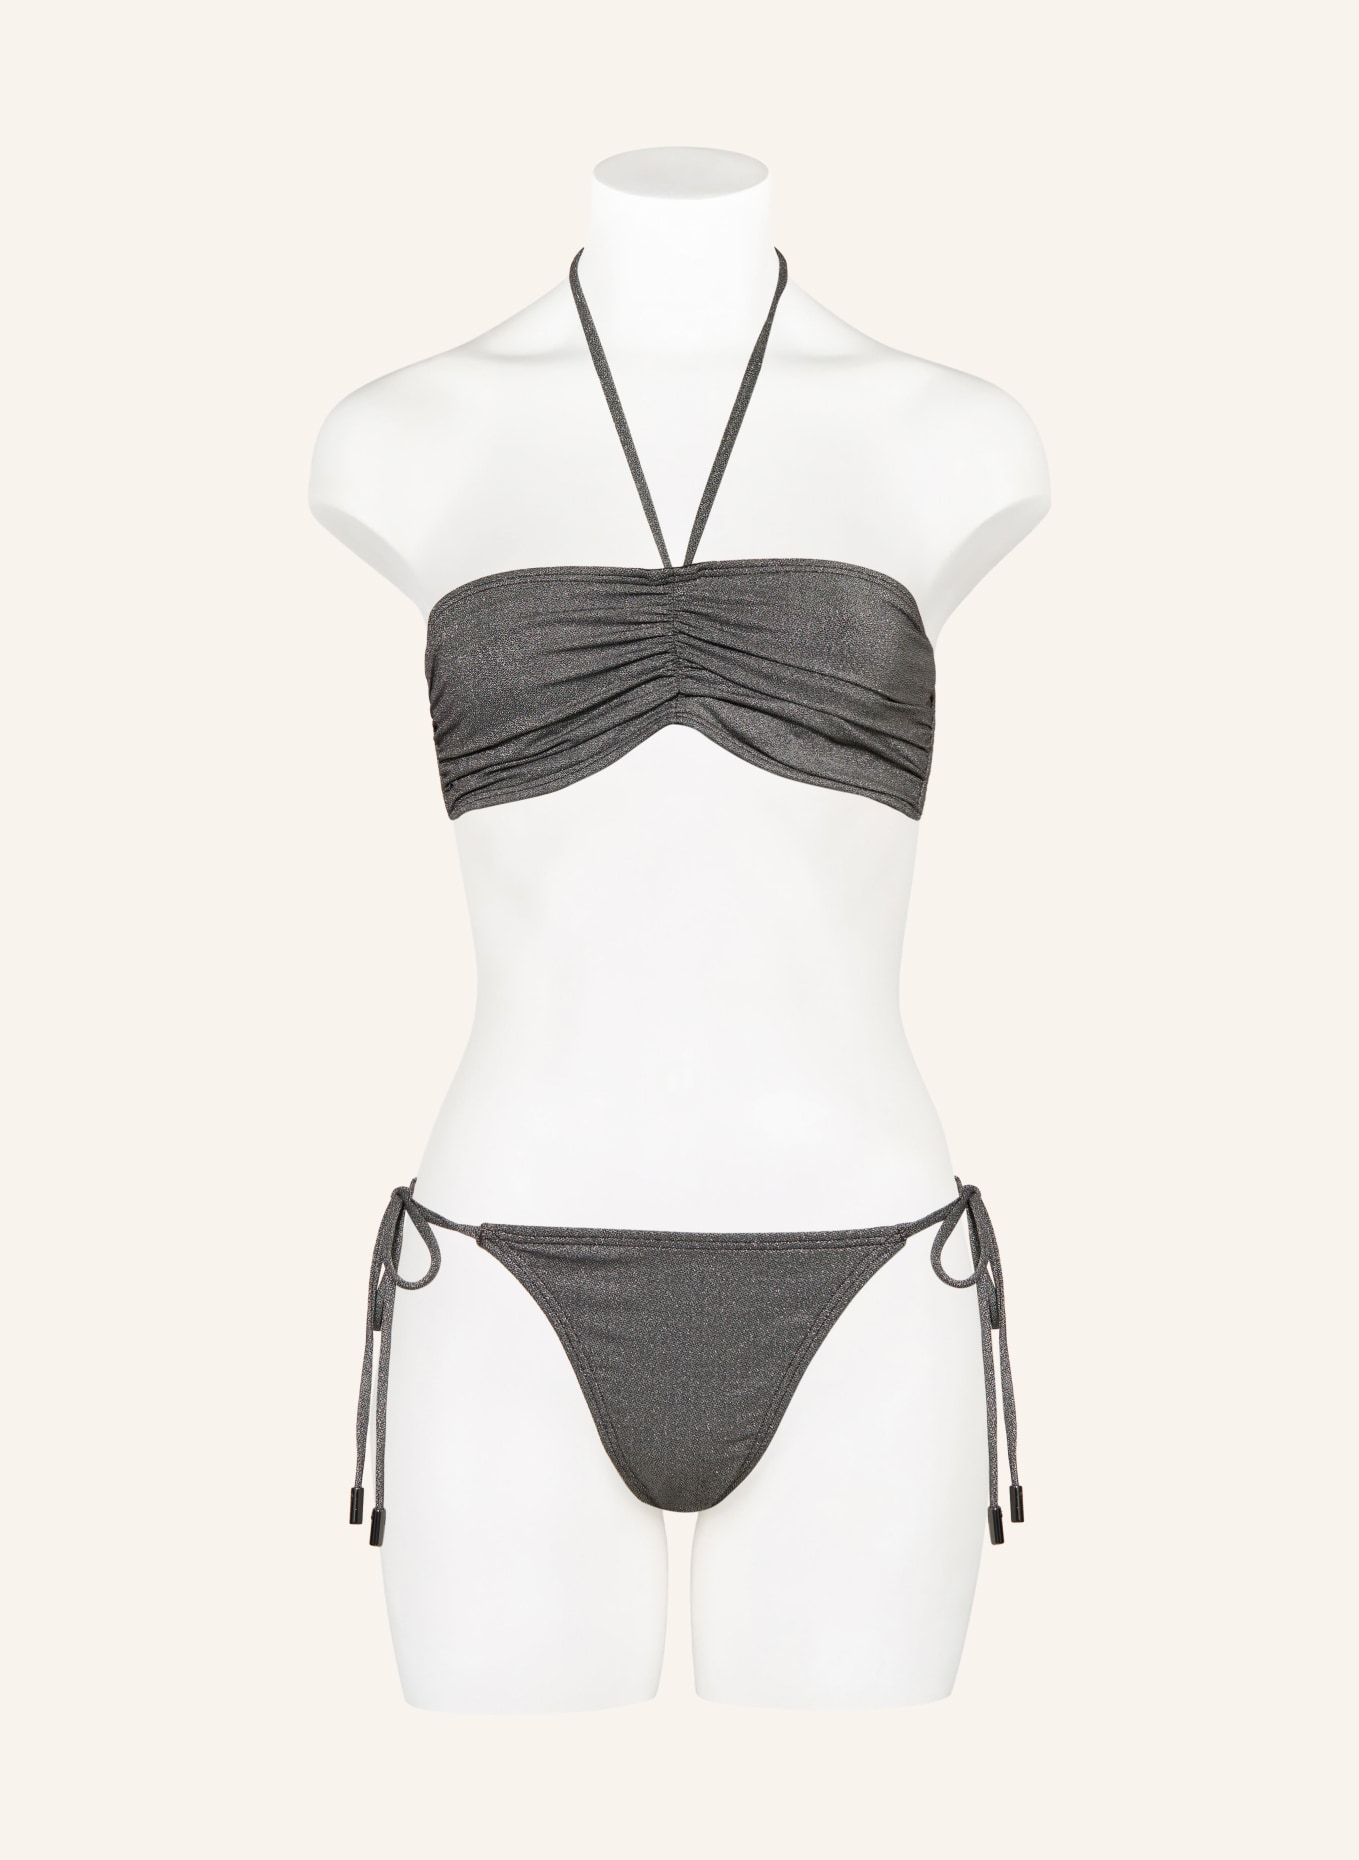 JETS Australia Underwired bikini top LUMEN with glitter thread, Color: SILVER (Image 2)